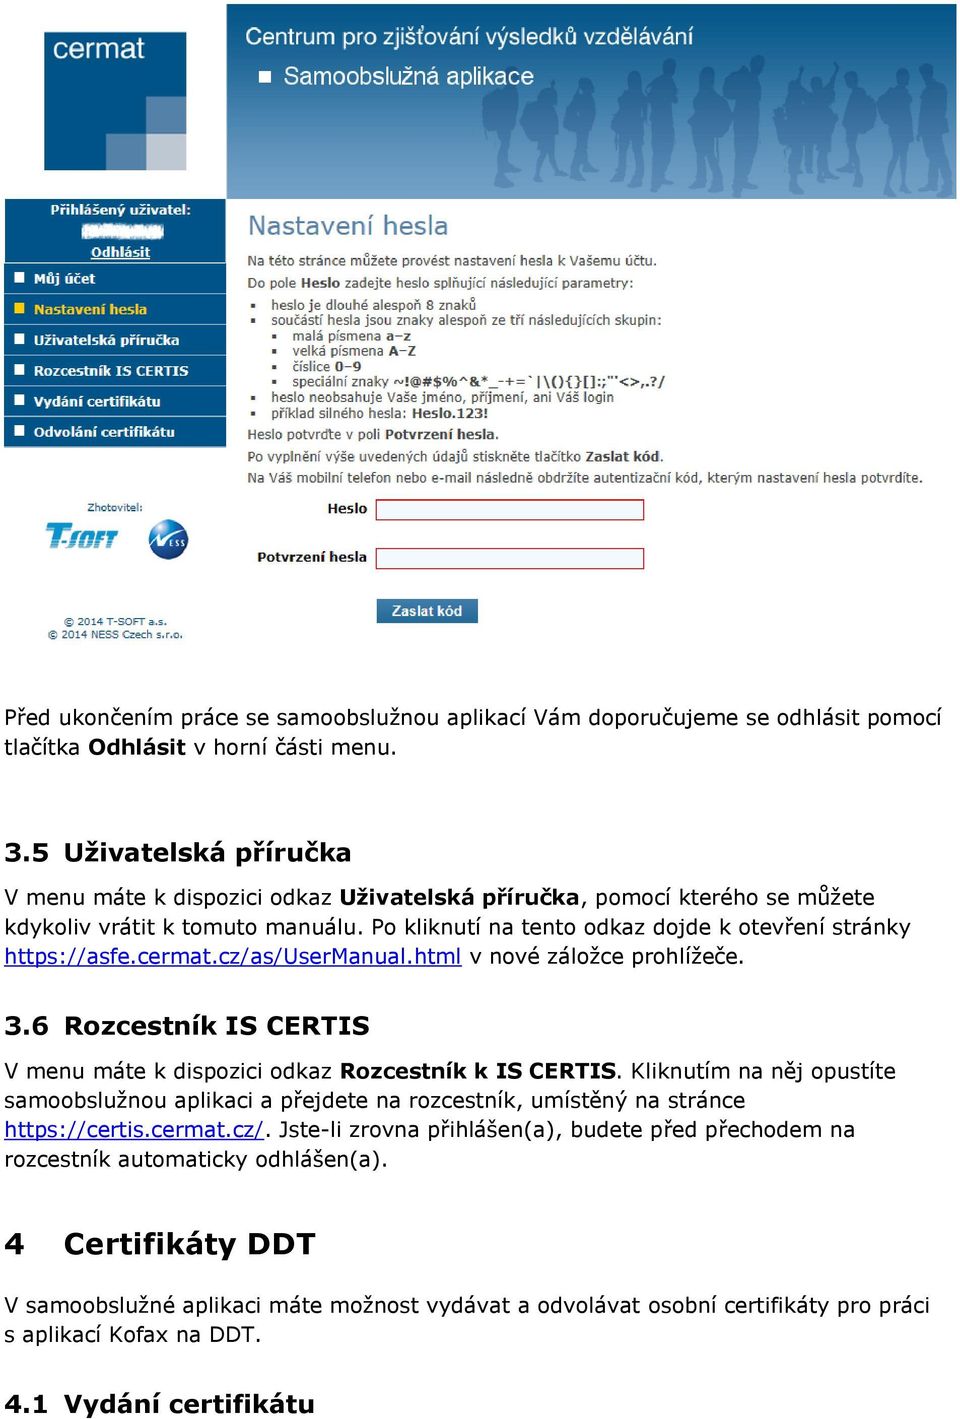 cermat.cz/as/usermanual.html v nové záložce prohlížeče. 3.6 Rozcestník IS CERTIS V menu máte k dispozici odkaz Rozcestník k IS CERTIS.